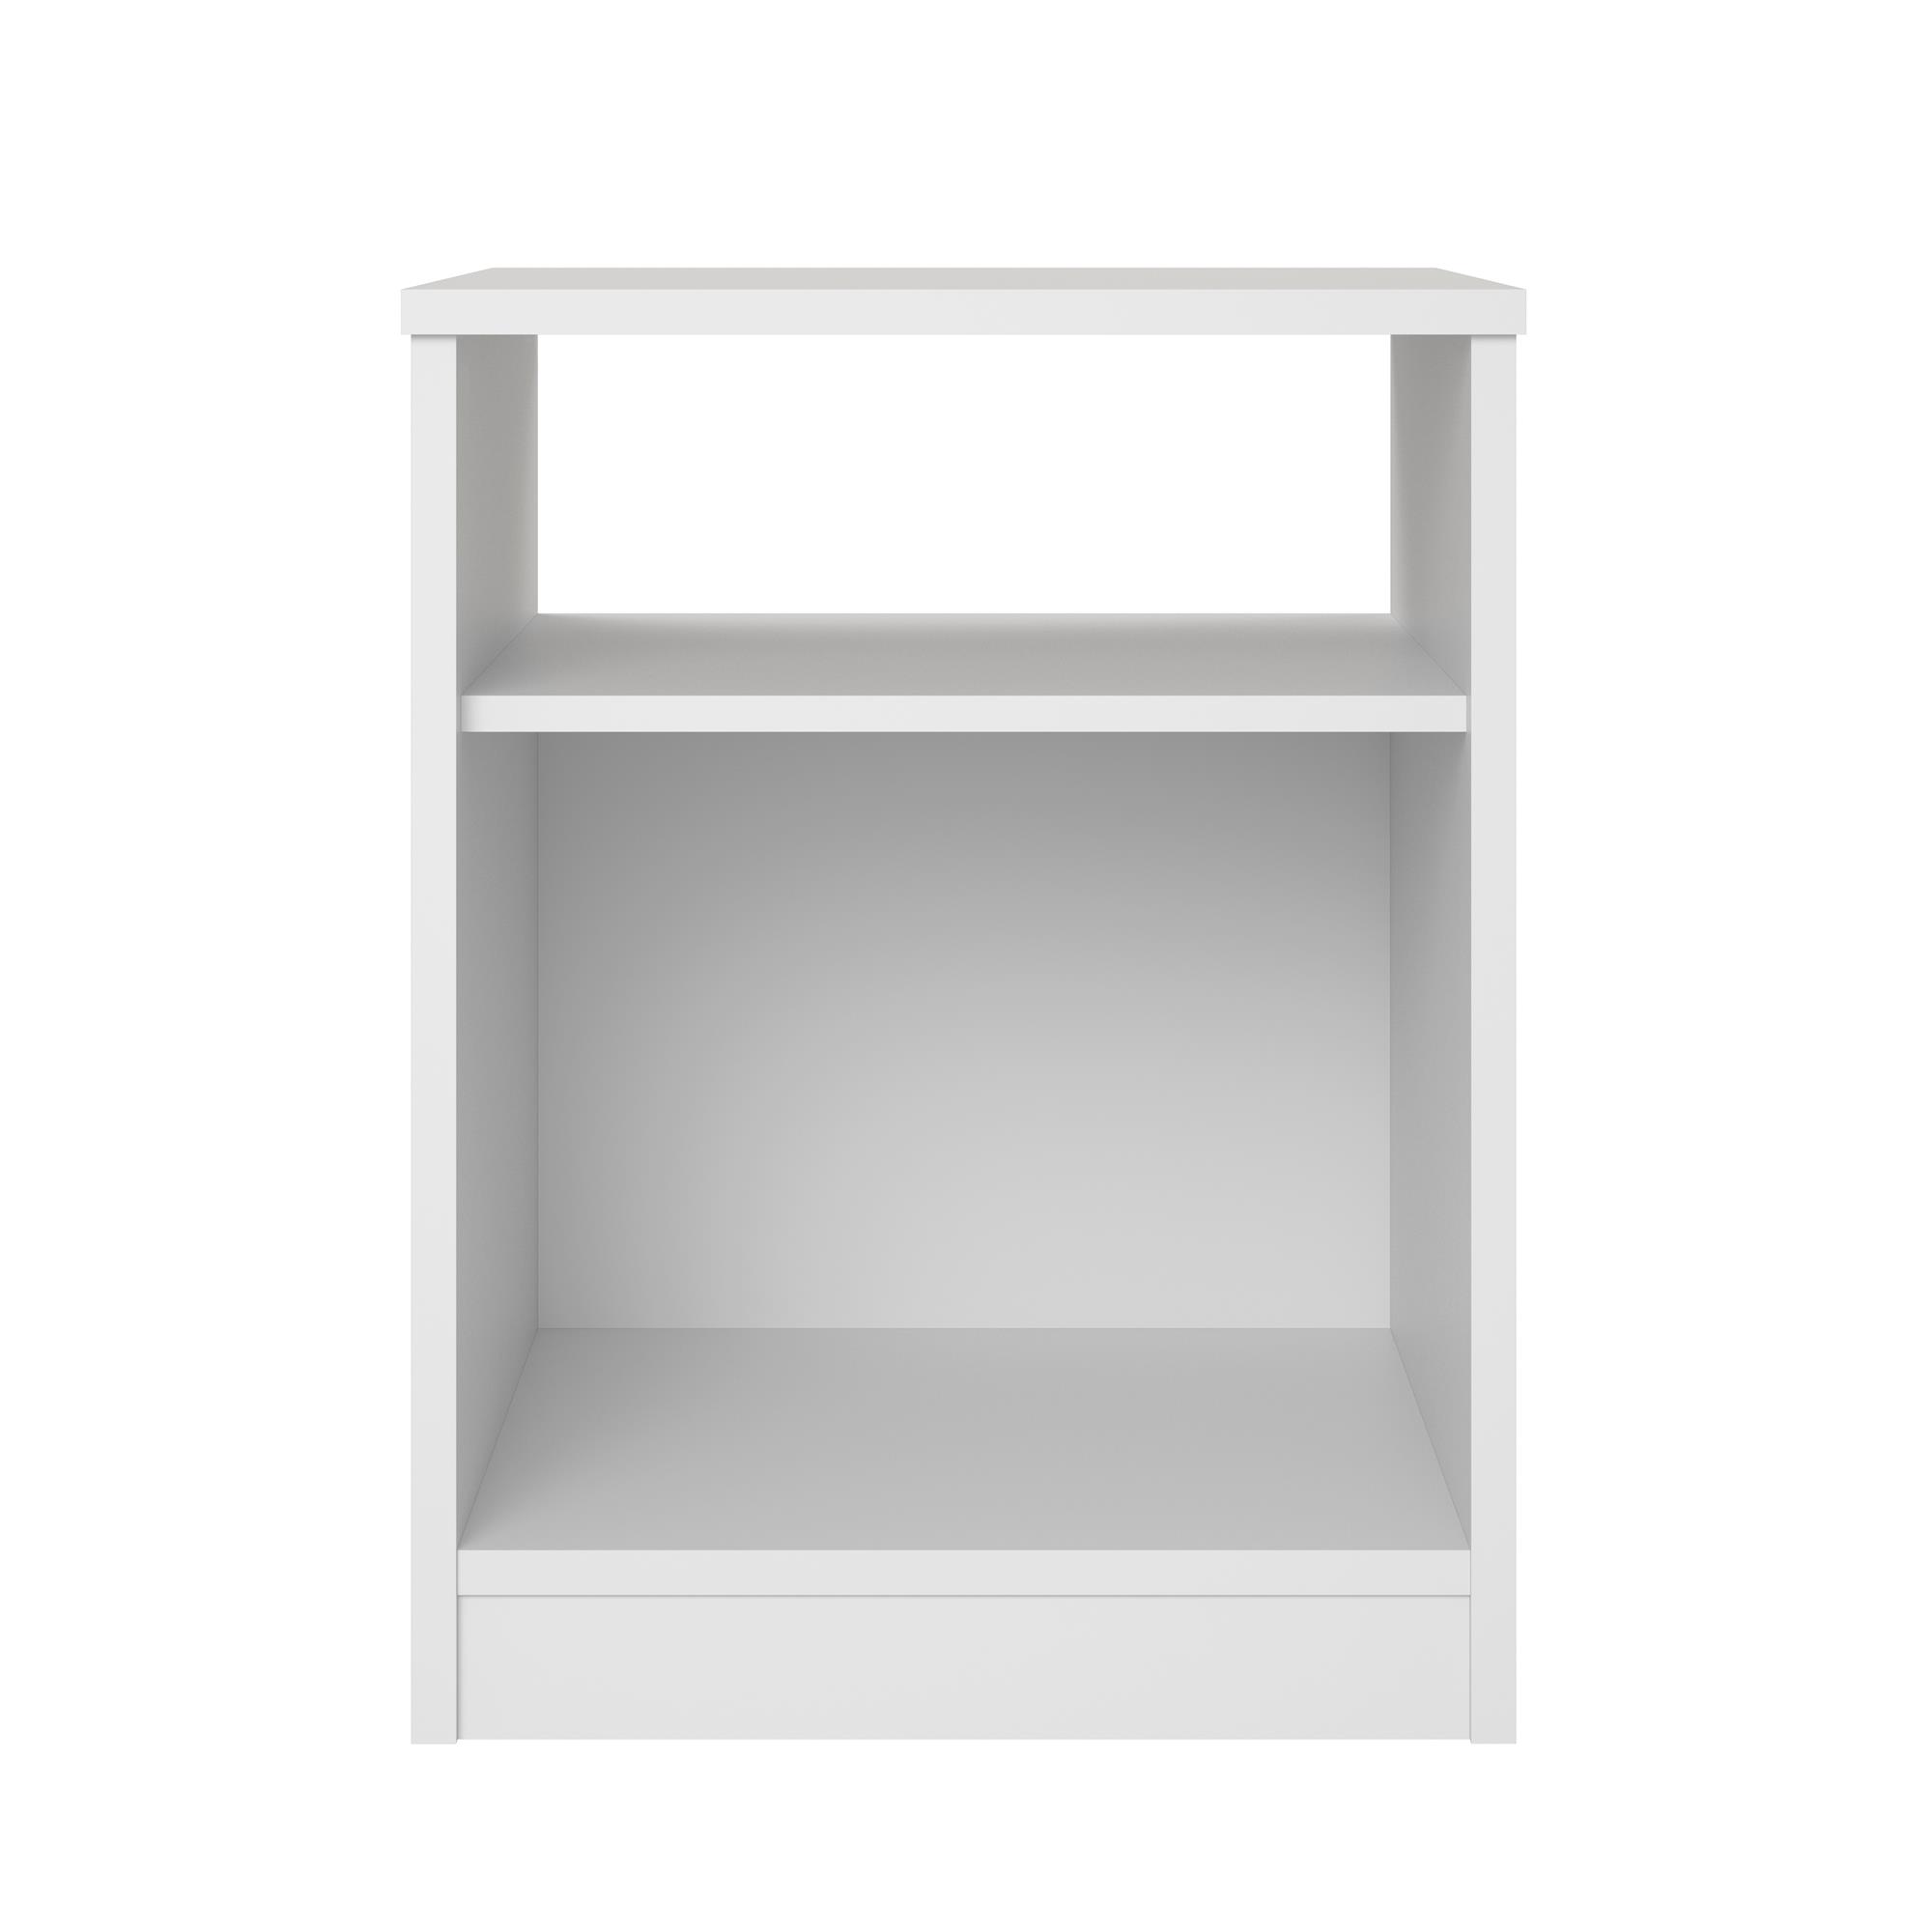 Mainstays Open Shelf Nightstand, White - image 5 of 5